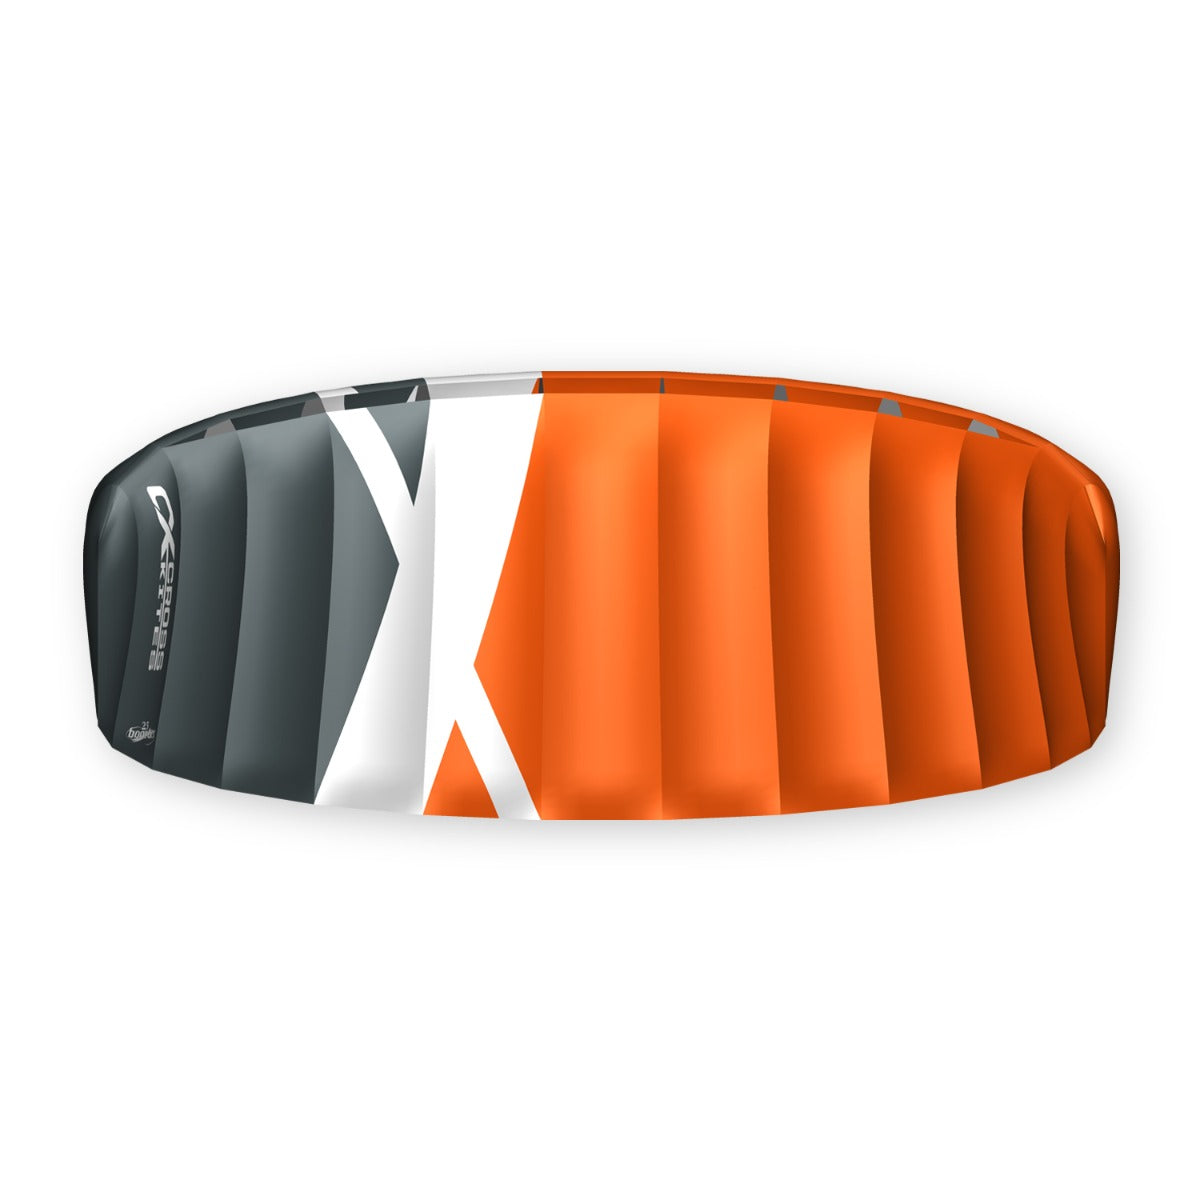 CrossKites Lenkmatte Boarder Orange 2.5 R2F Trainerkite Lenkdrachen mit Bar